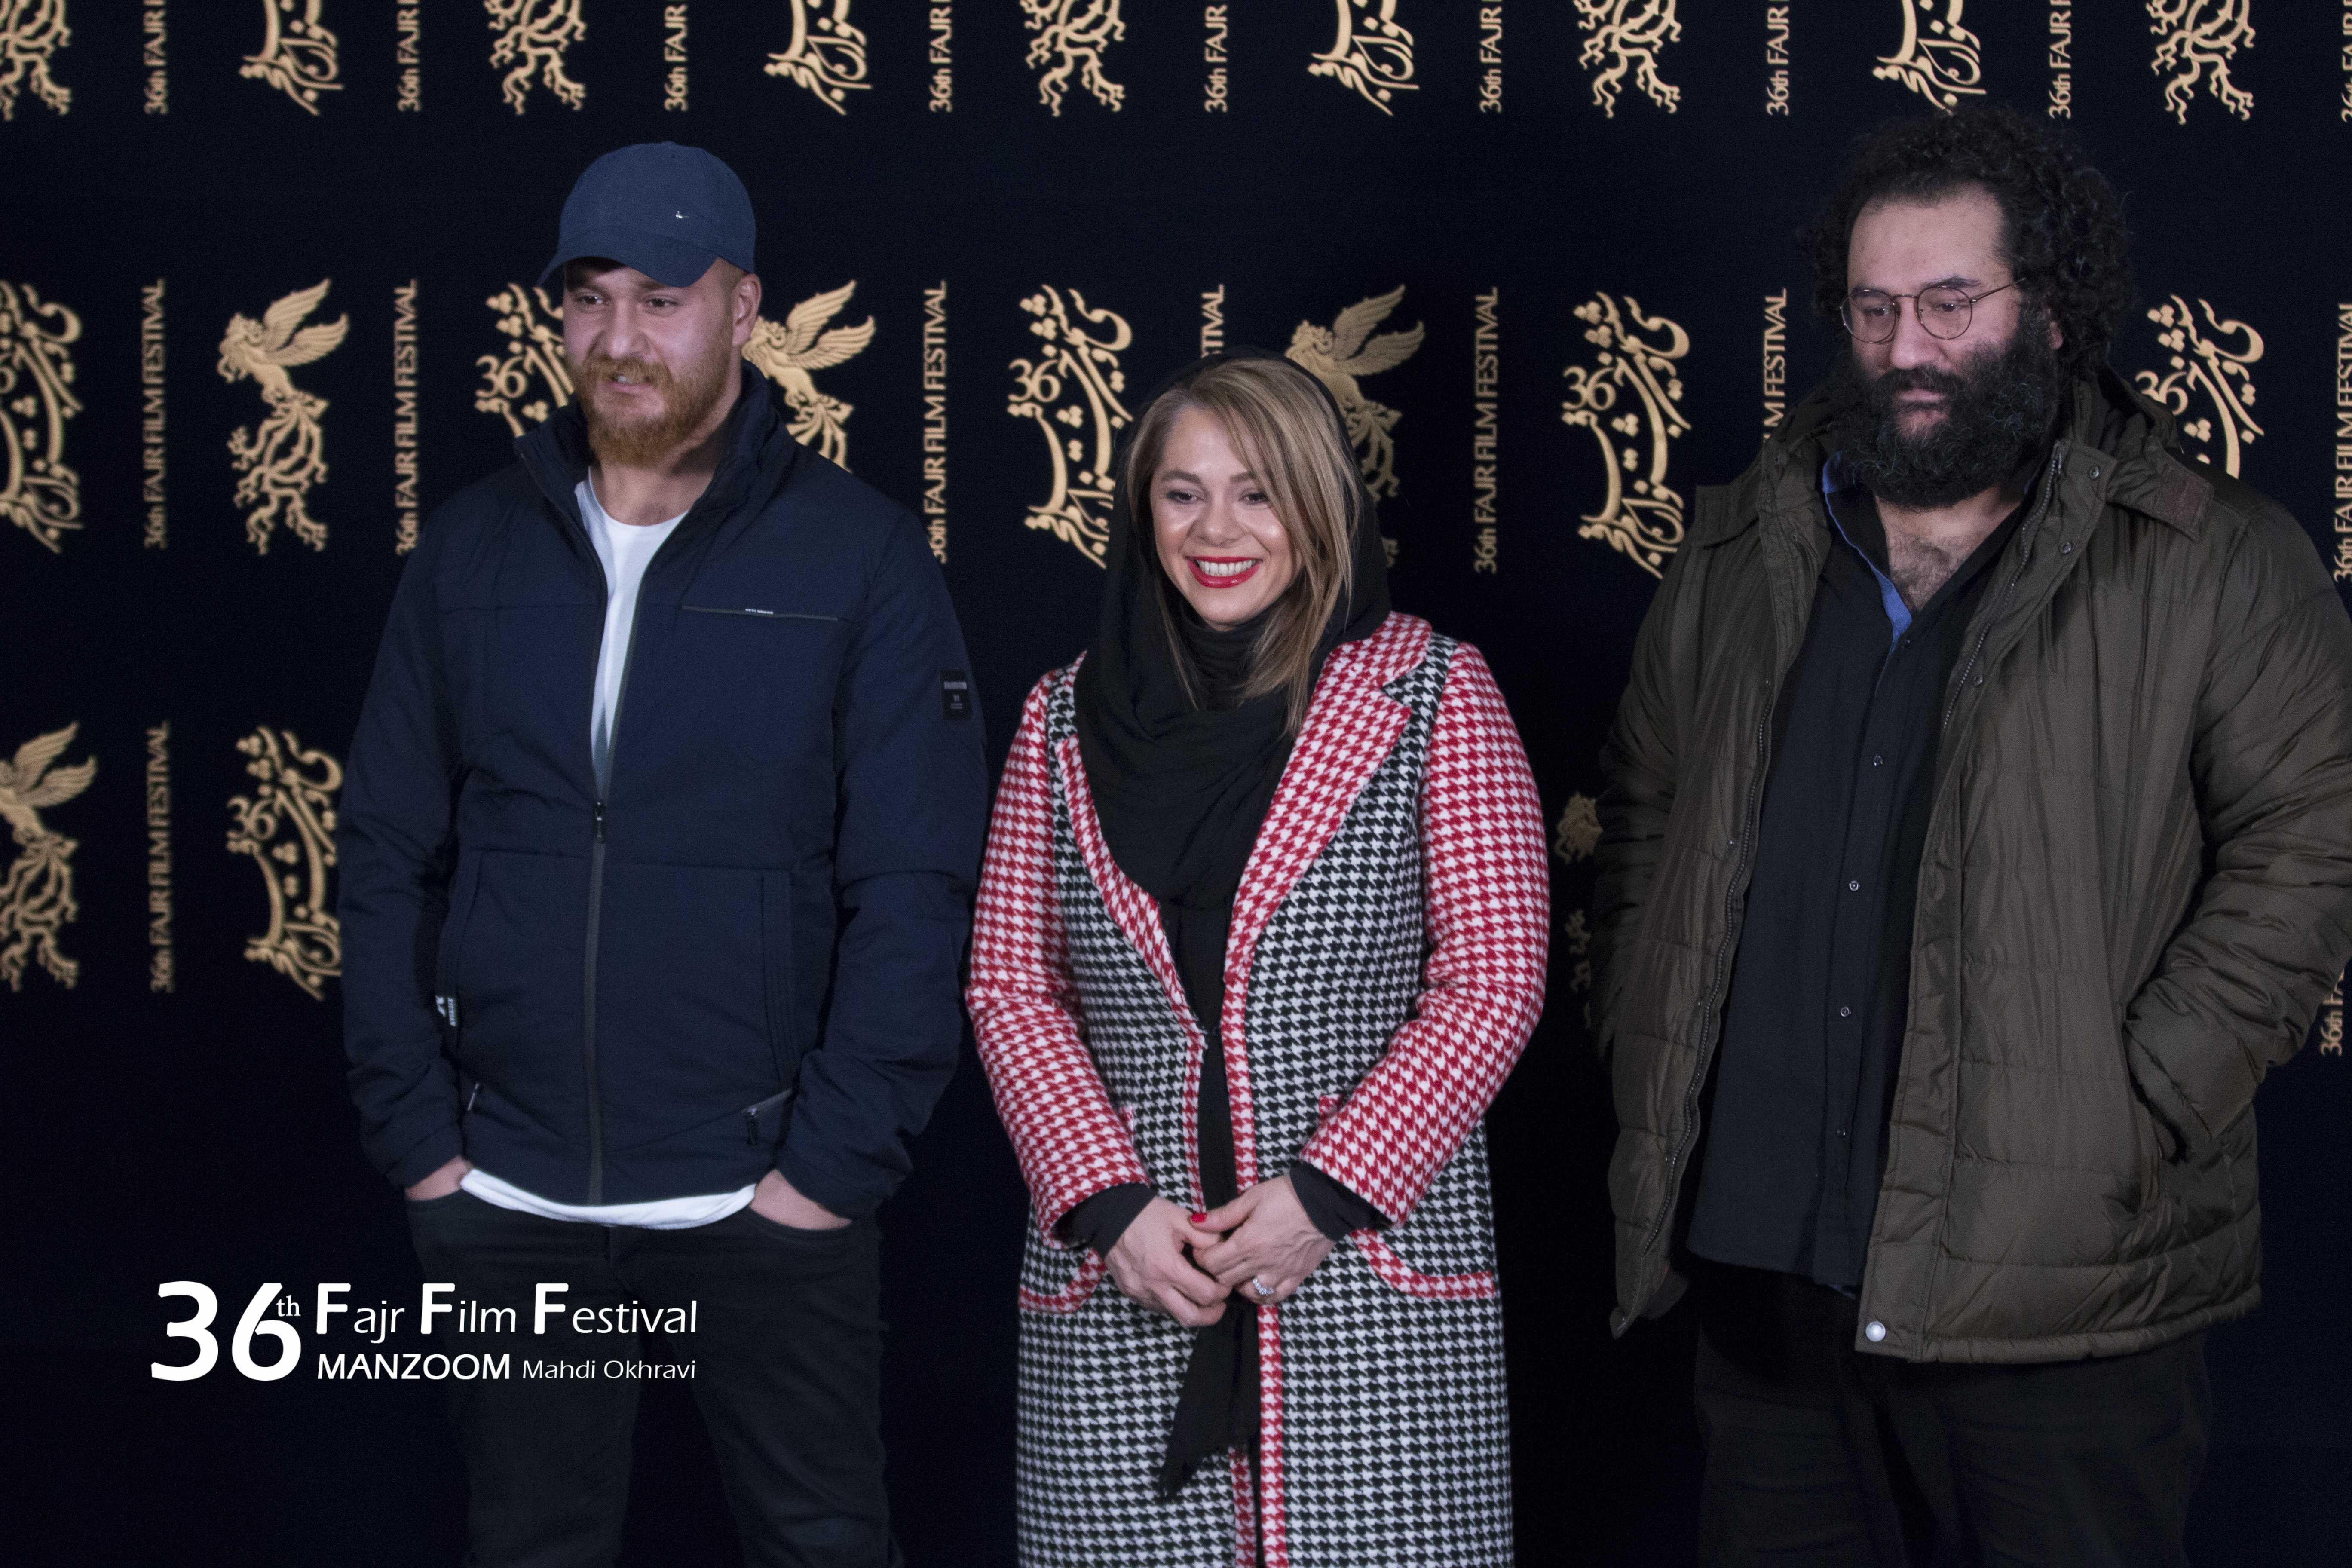 میلاد کی‌مرام در جشنواره فیلم سینمایی امیر به همراه مستانه مهاجر و نیما اقلیما